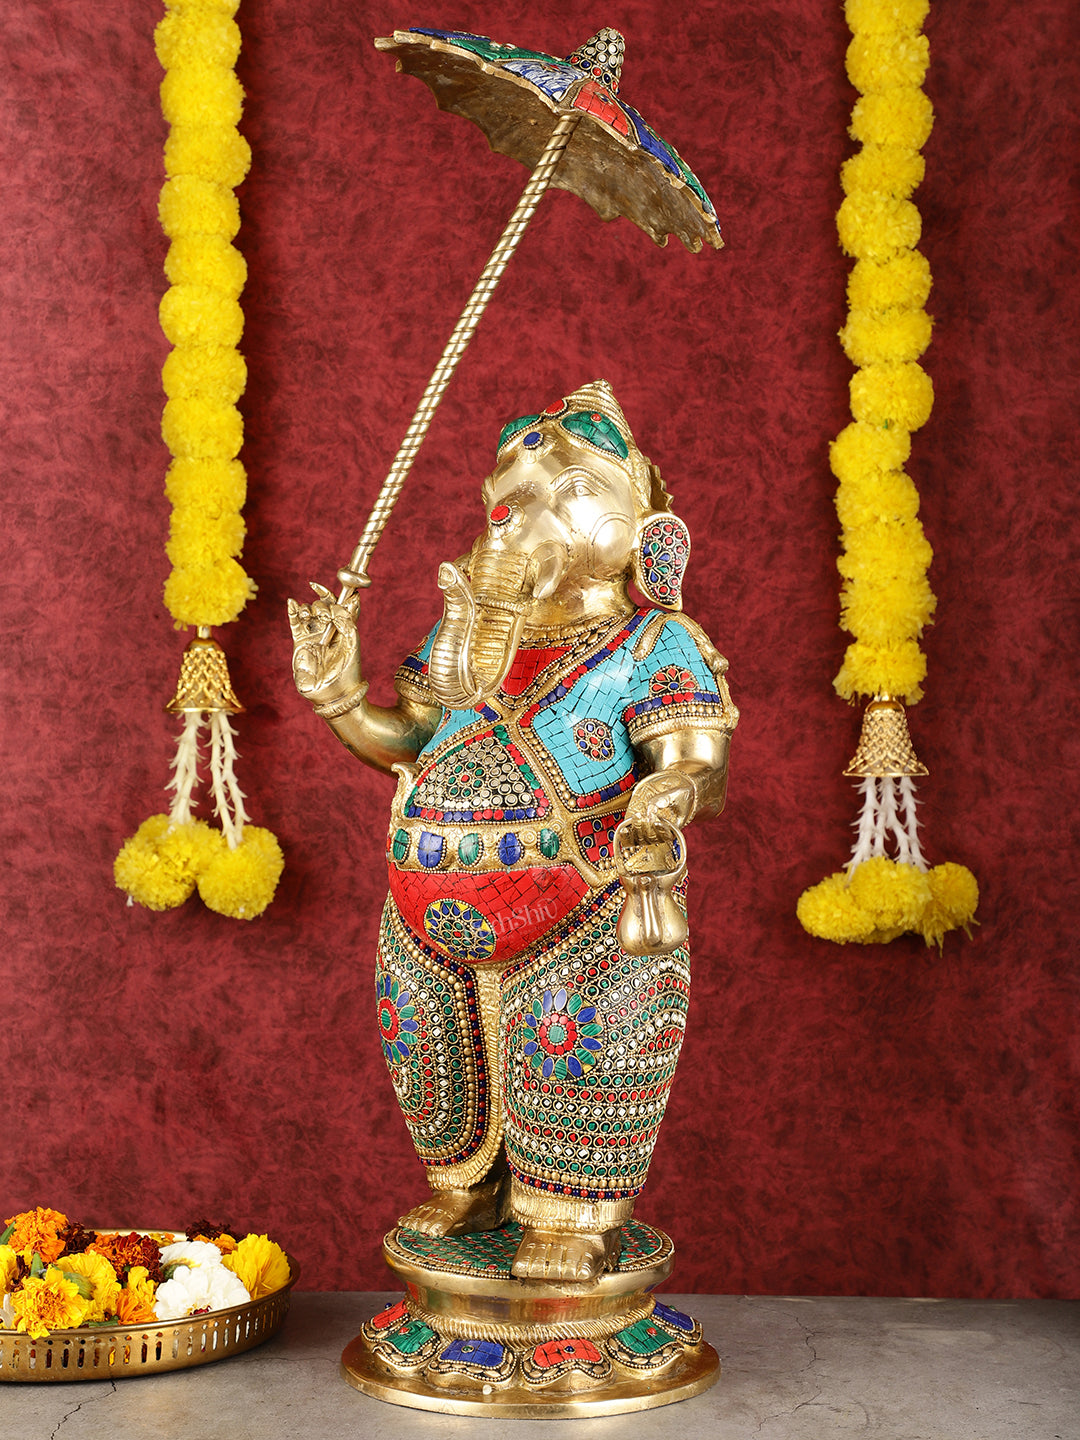 29-inch Standing Lord Ganesha Statue with Umbrella meenakari Stonework